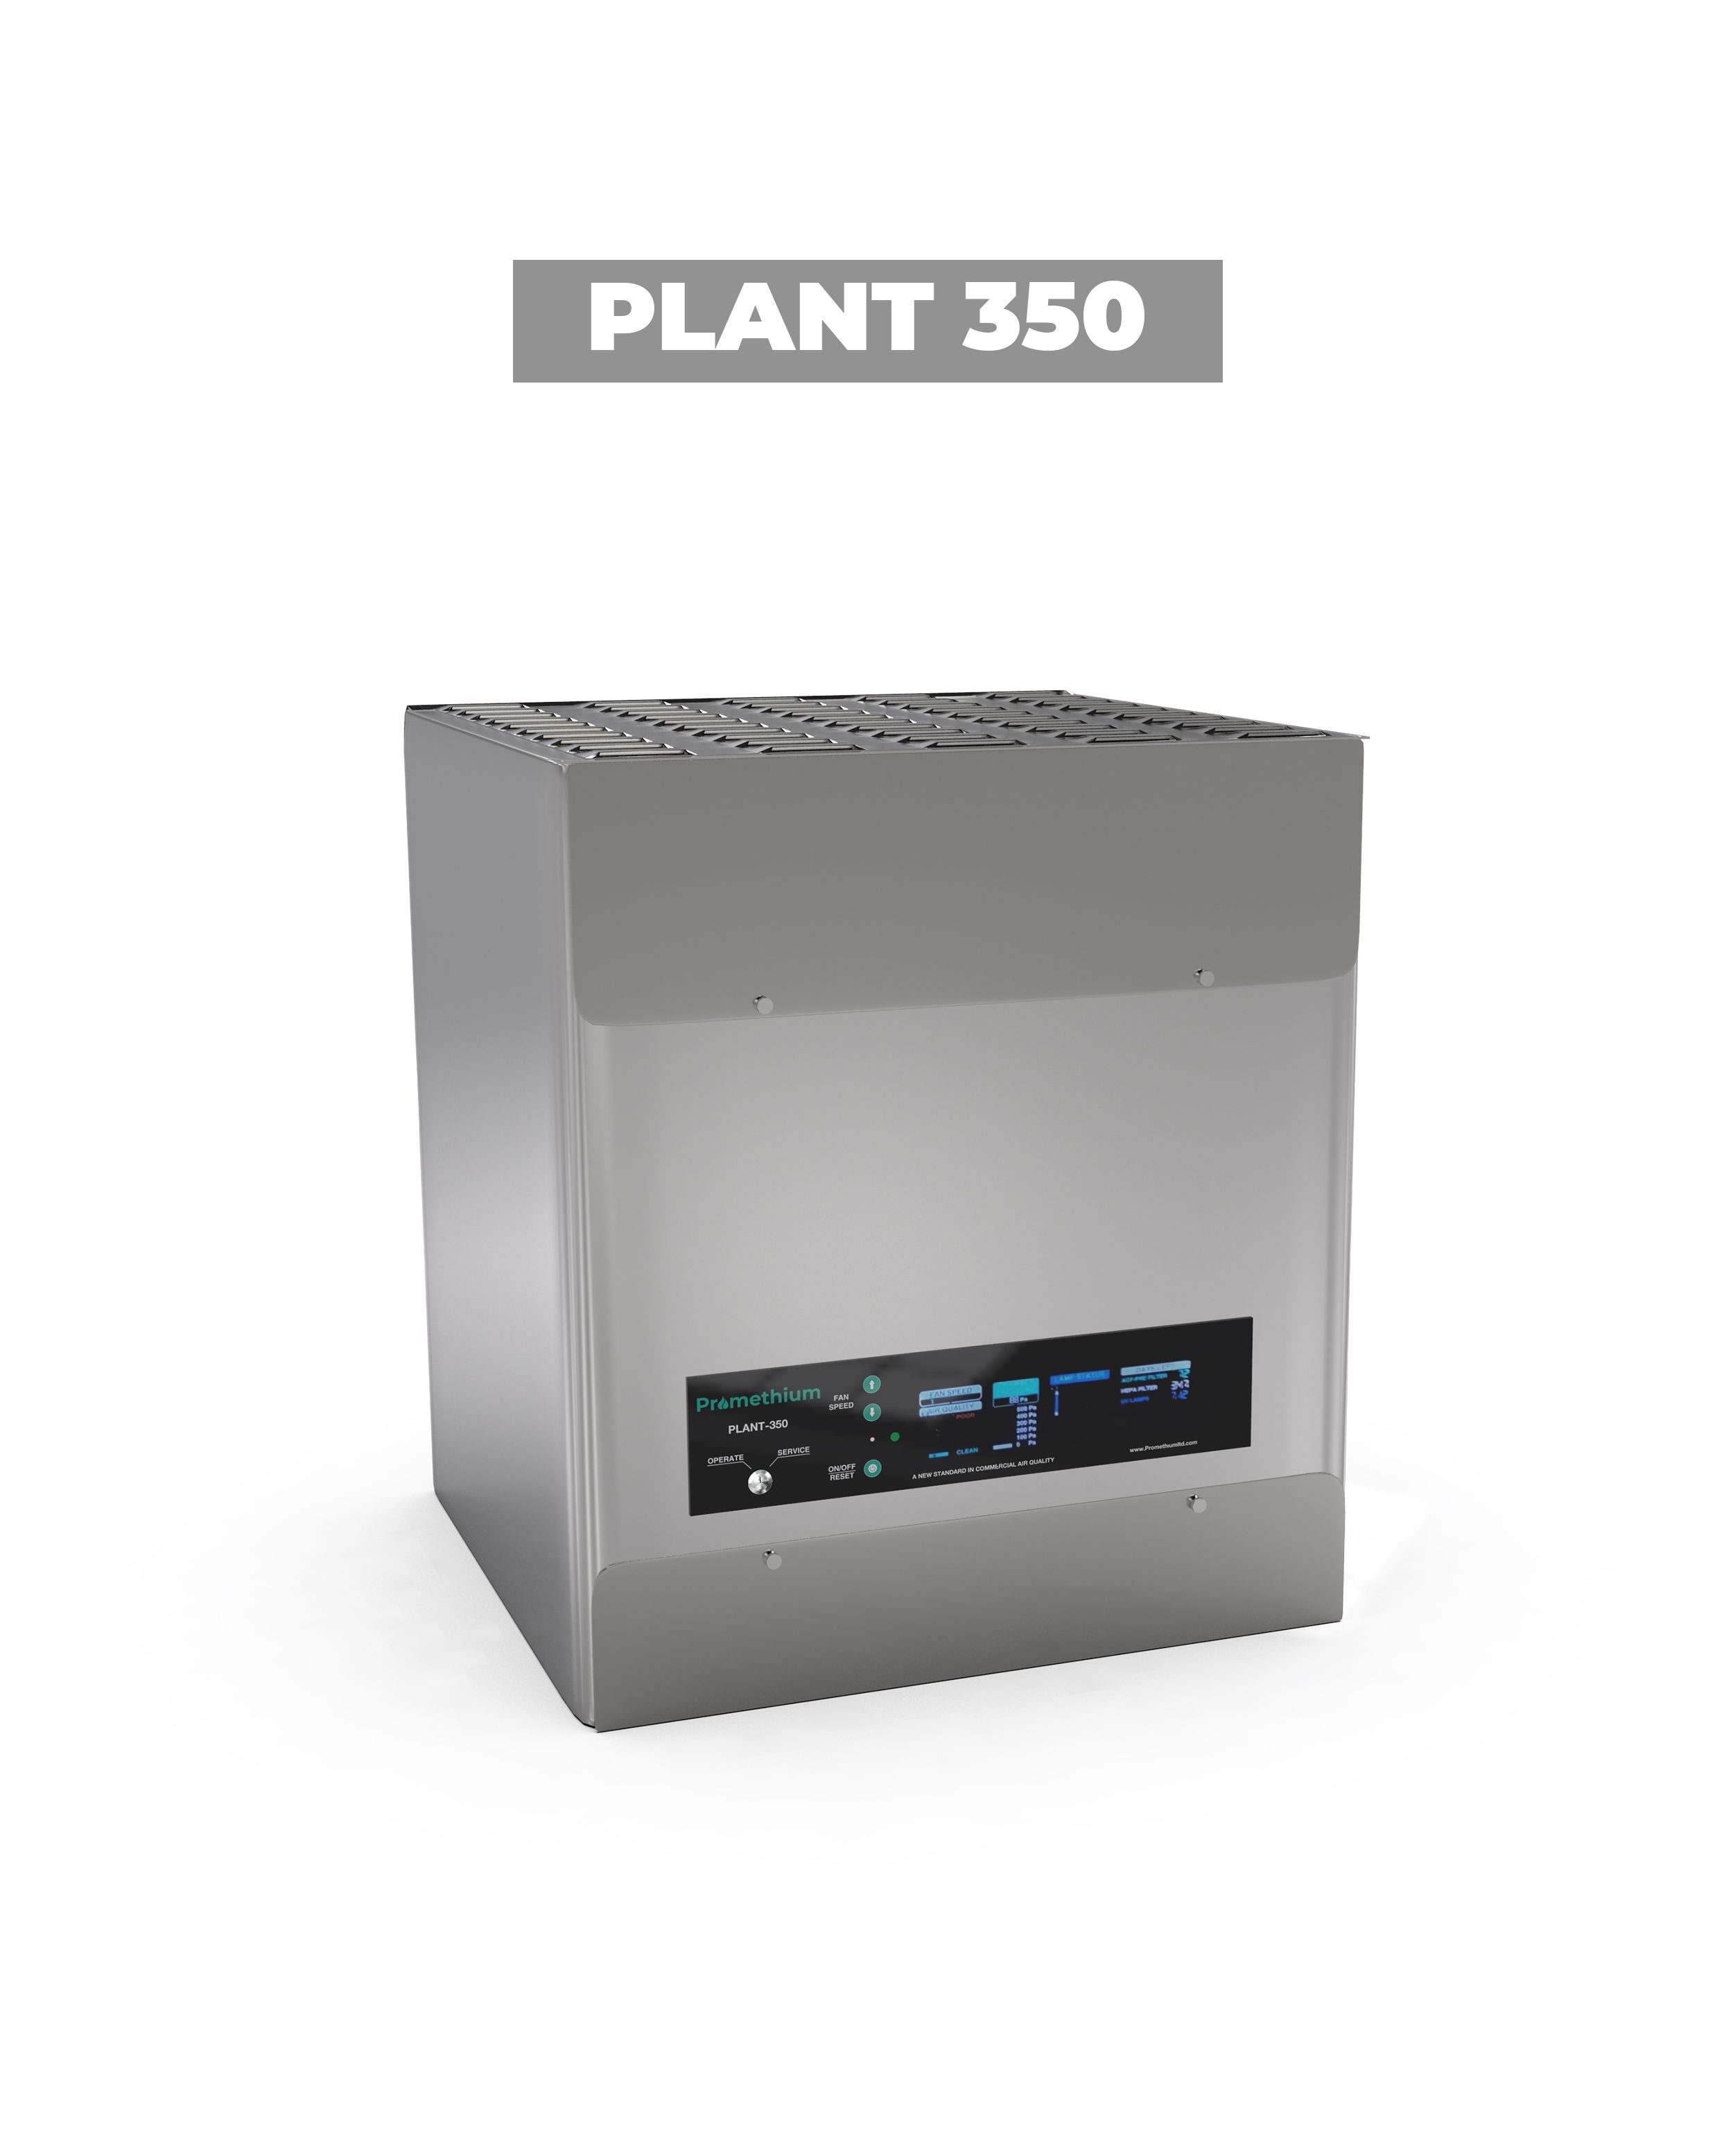 PLANT 350